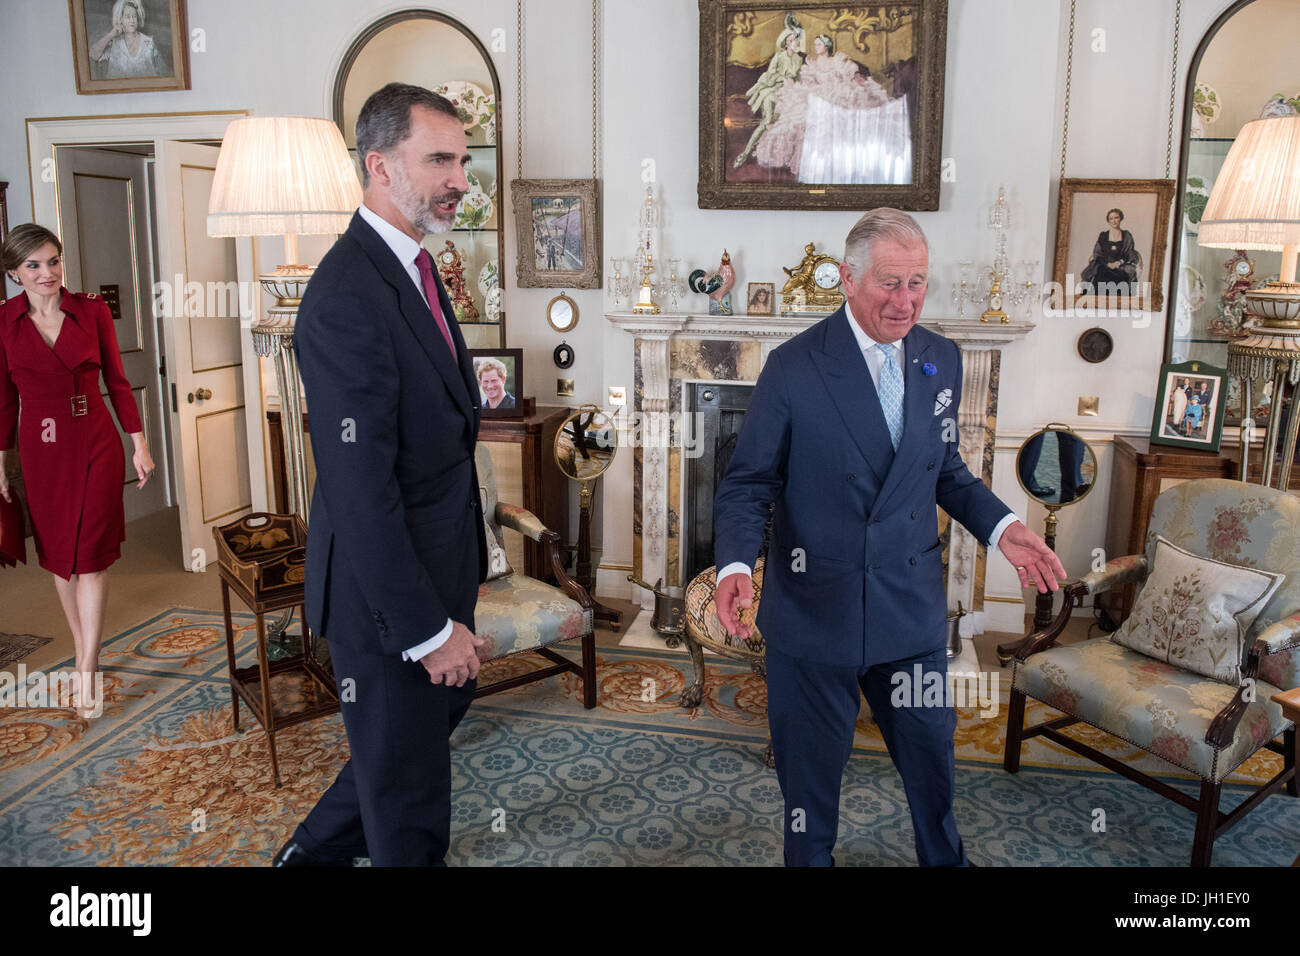 Le Prince de Galles rencontre le roi Felipe VI et La Reine Letizia d'Espagne à Clarence House, à Londres pendant la visite d'État du roi du Royaume-Uni. Banque D'Images